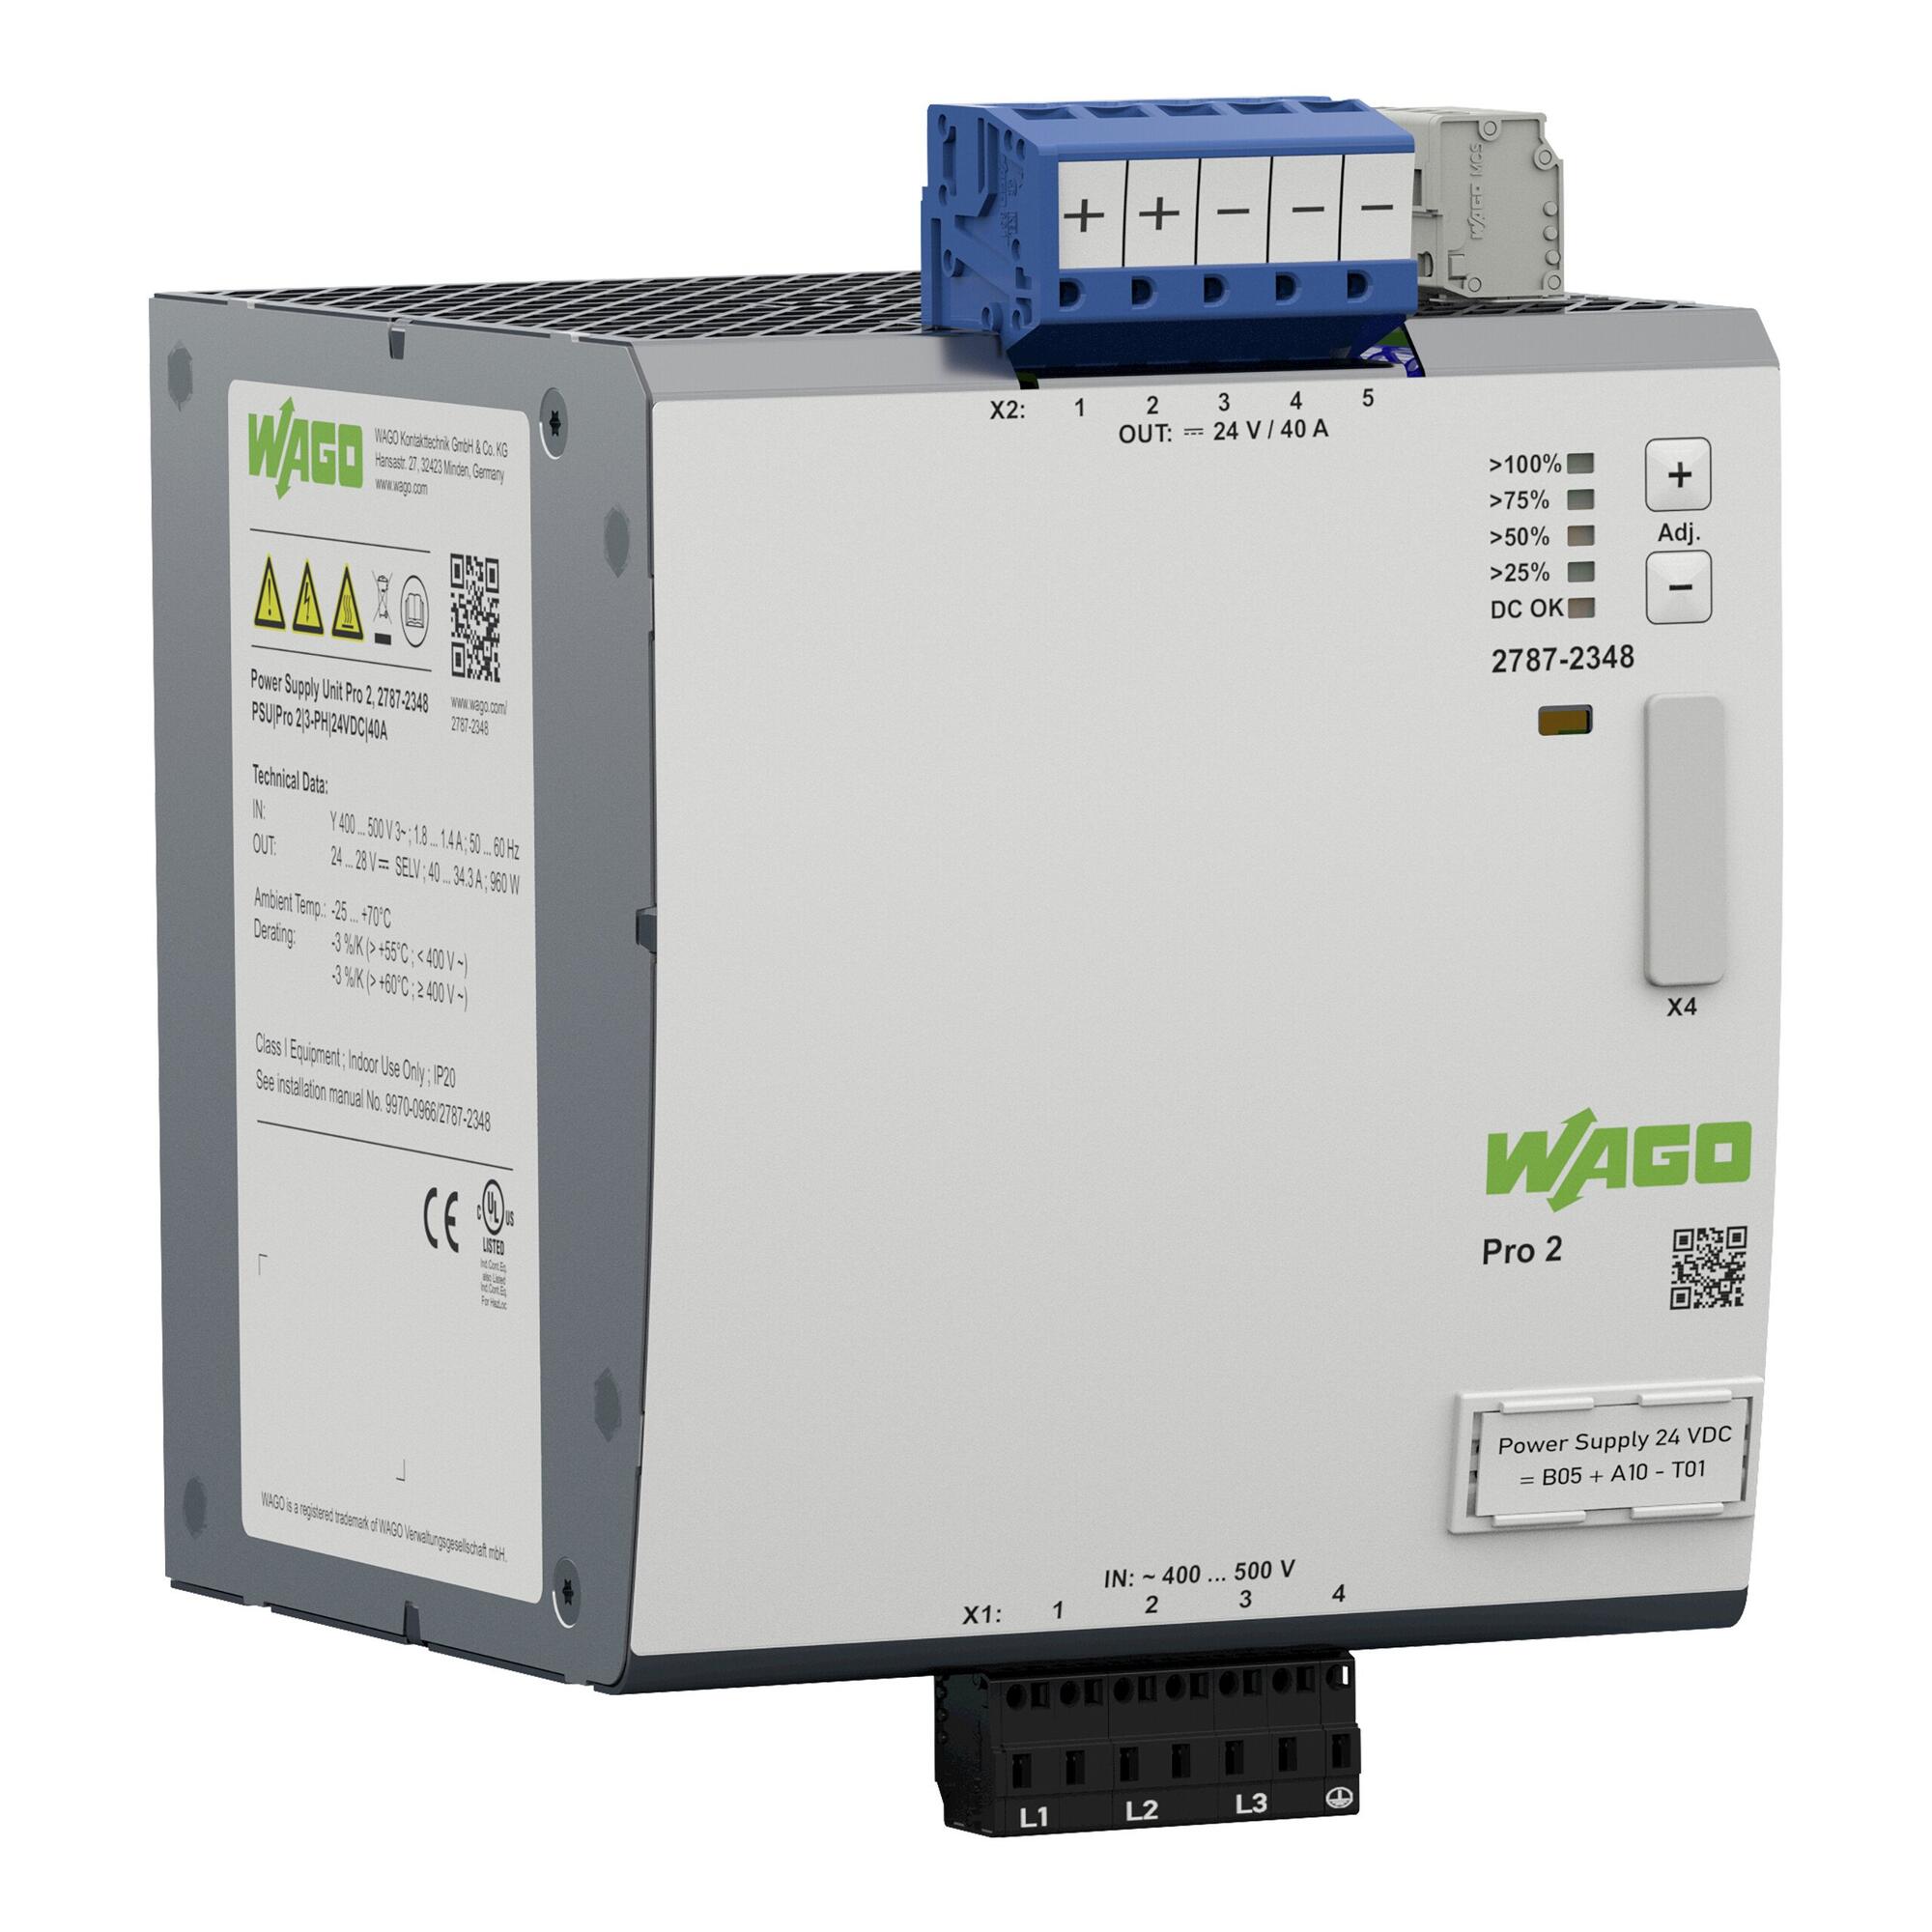 电源; Pro 2; 3相; 24 VDC输出电压; 40 A输出电流; TopBoost + PowerBoost; 通信能力